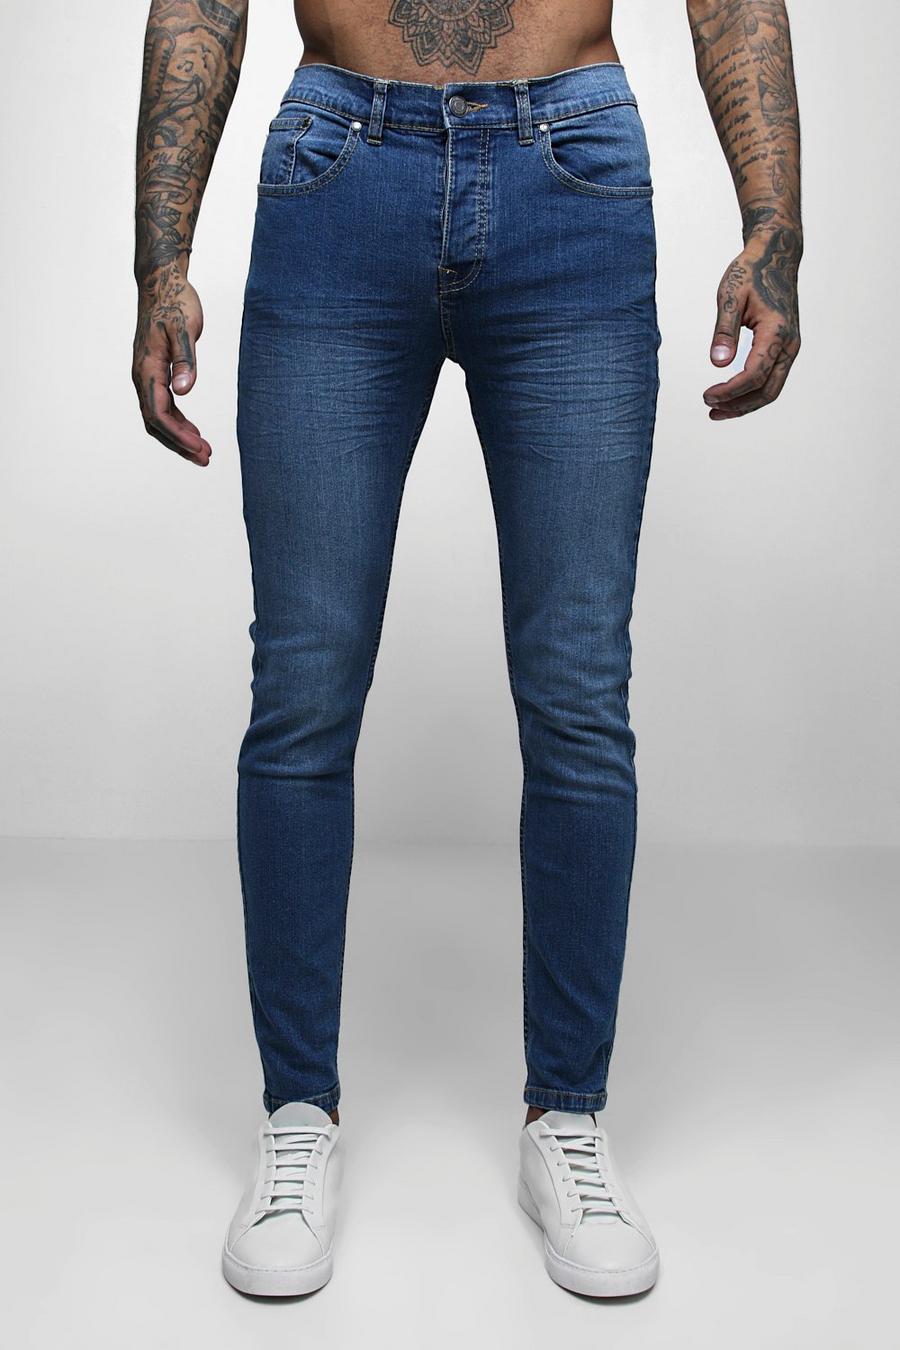 סקיני ג'ינס בצבע כחול ביניים דהוי